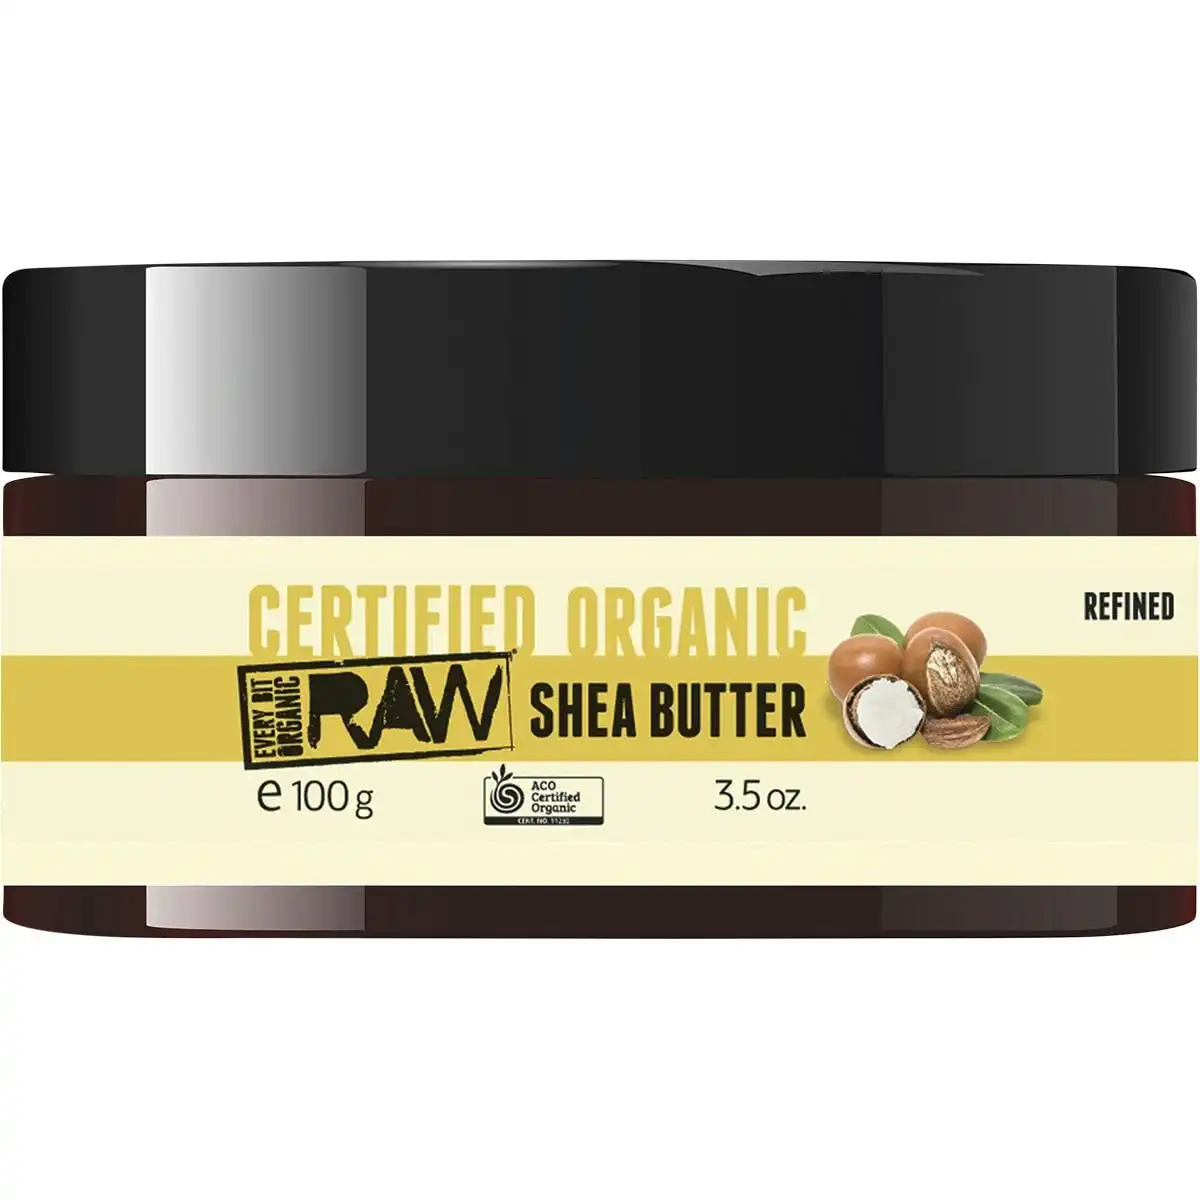 Every Bit Organic RAW Shea Butter 100g